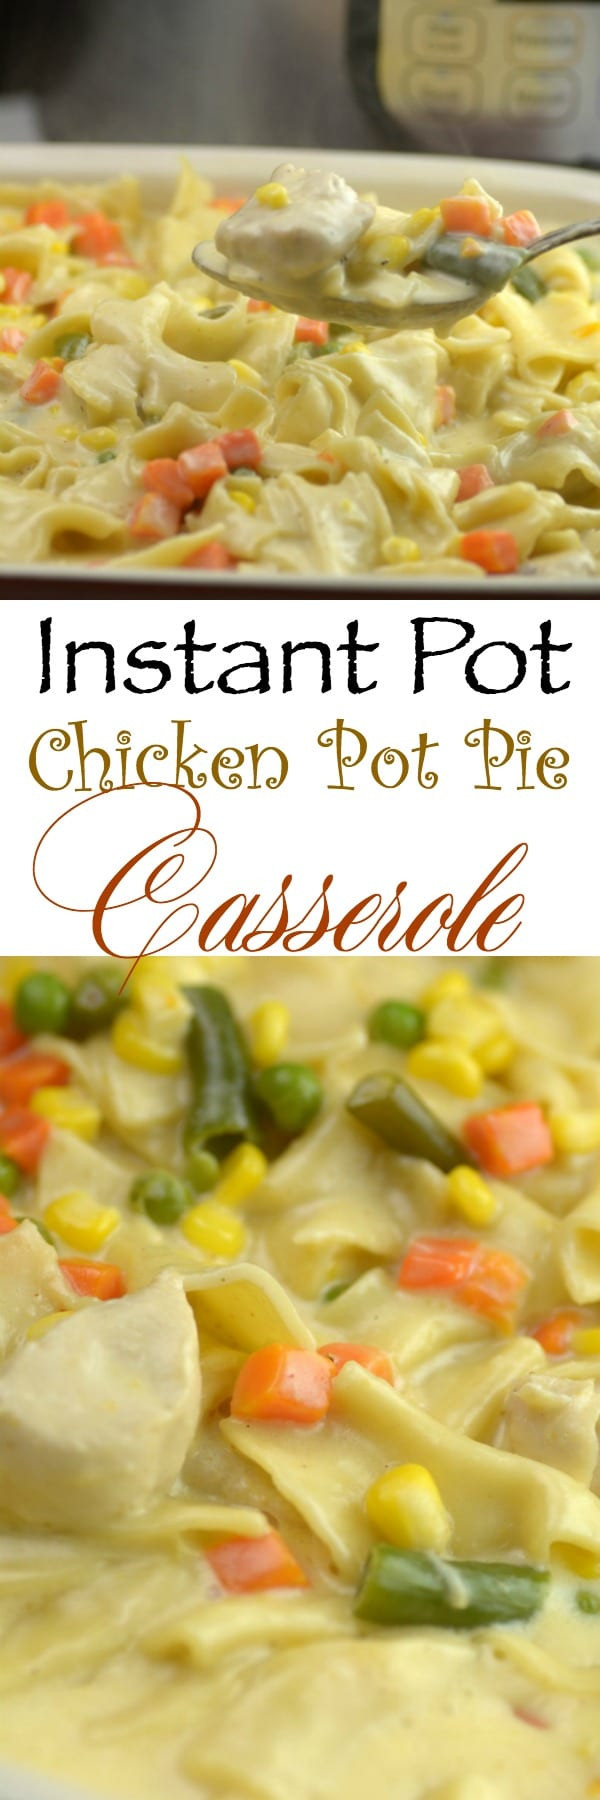 Instant Pot Chicken Casserole
 Instant Pot Chicken PotPie Casserole